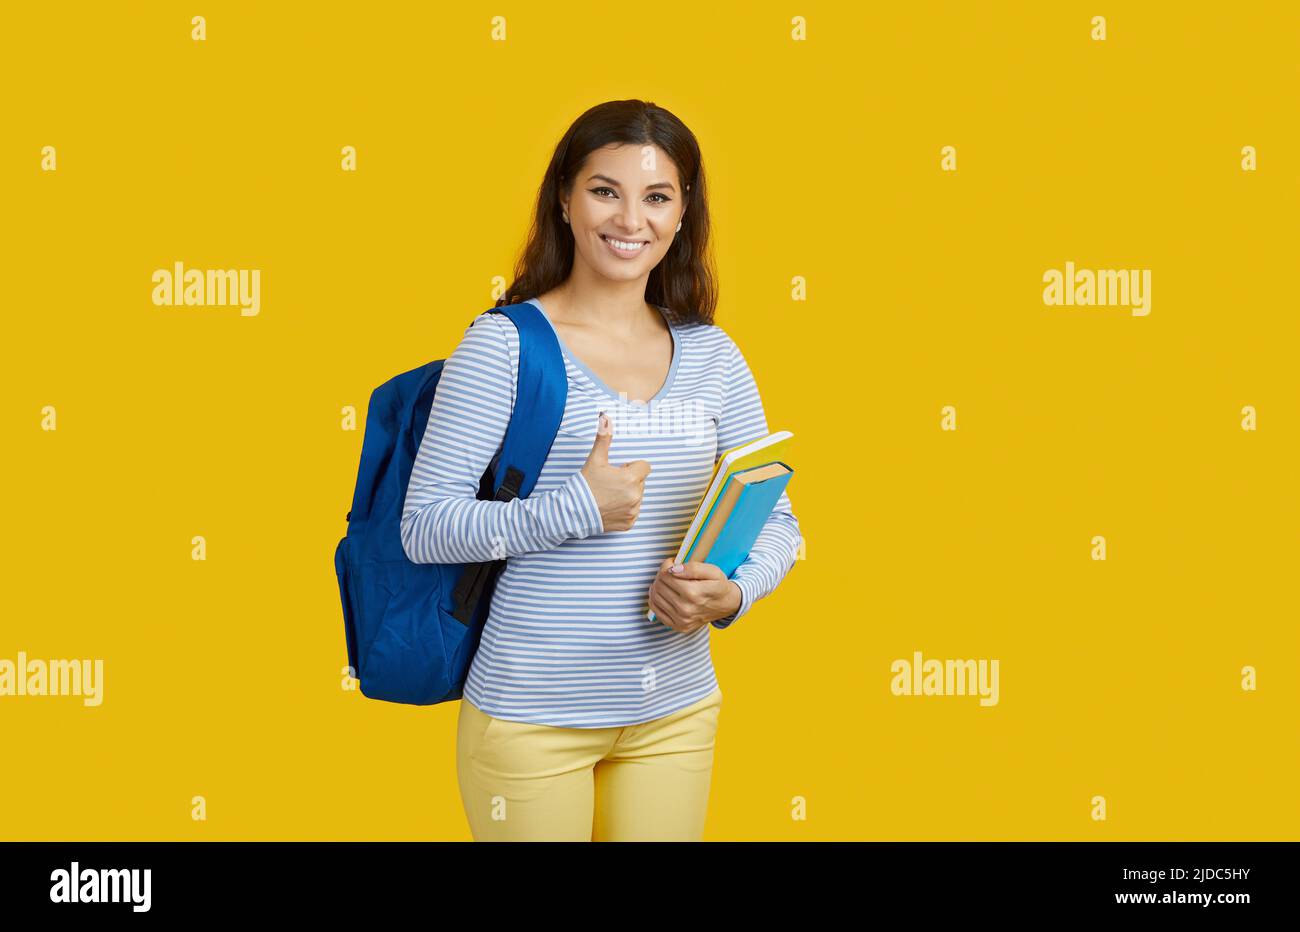 Scuola elementare con zaino che mostra il pollice in su e sorridendo su sfondo giallo vibrante, concetto di istruzione. Foto Stock